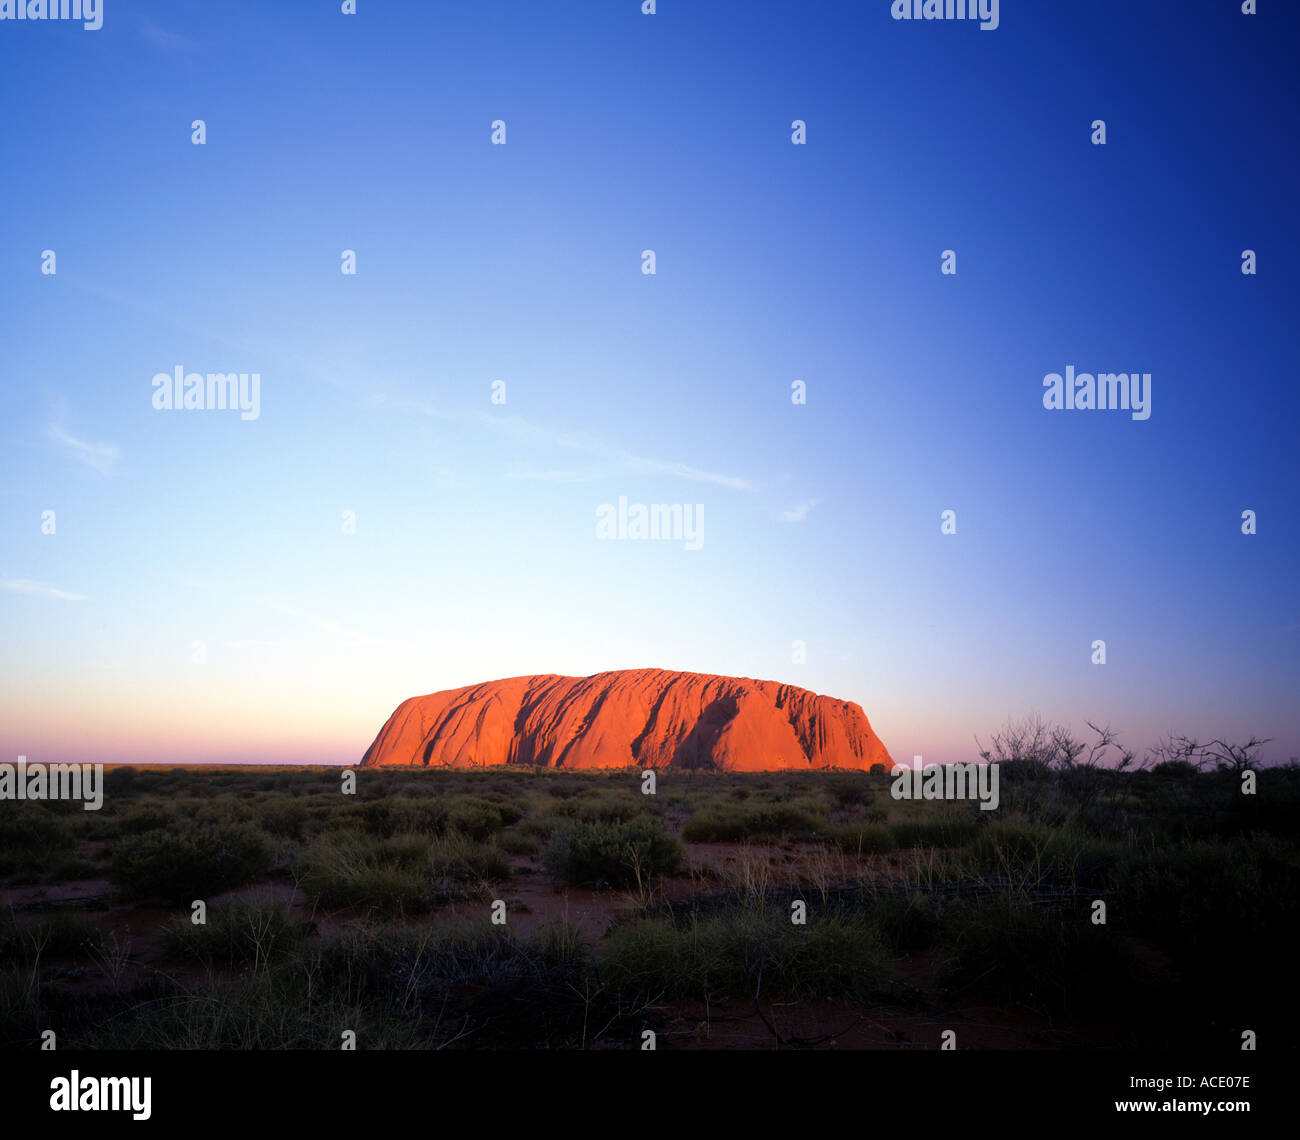 Uluru or Ayers Rock in The Northern Territory Australia Stock Photo